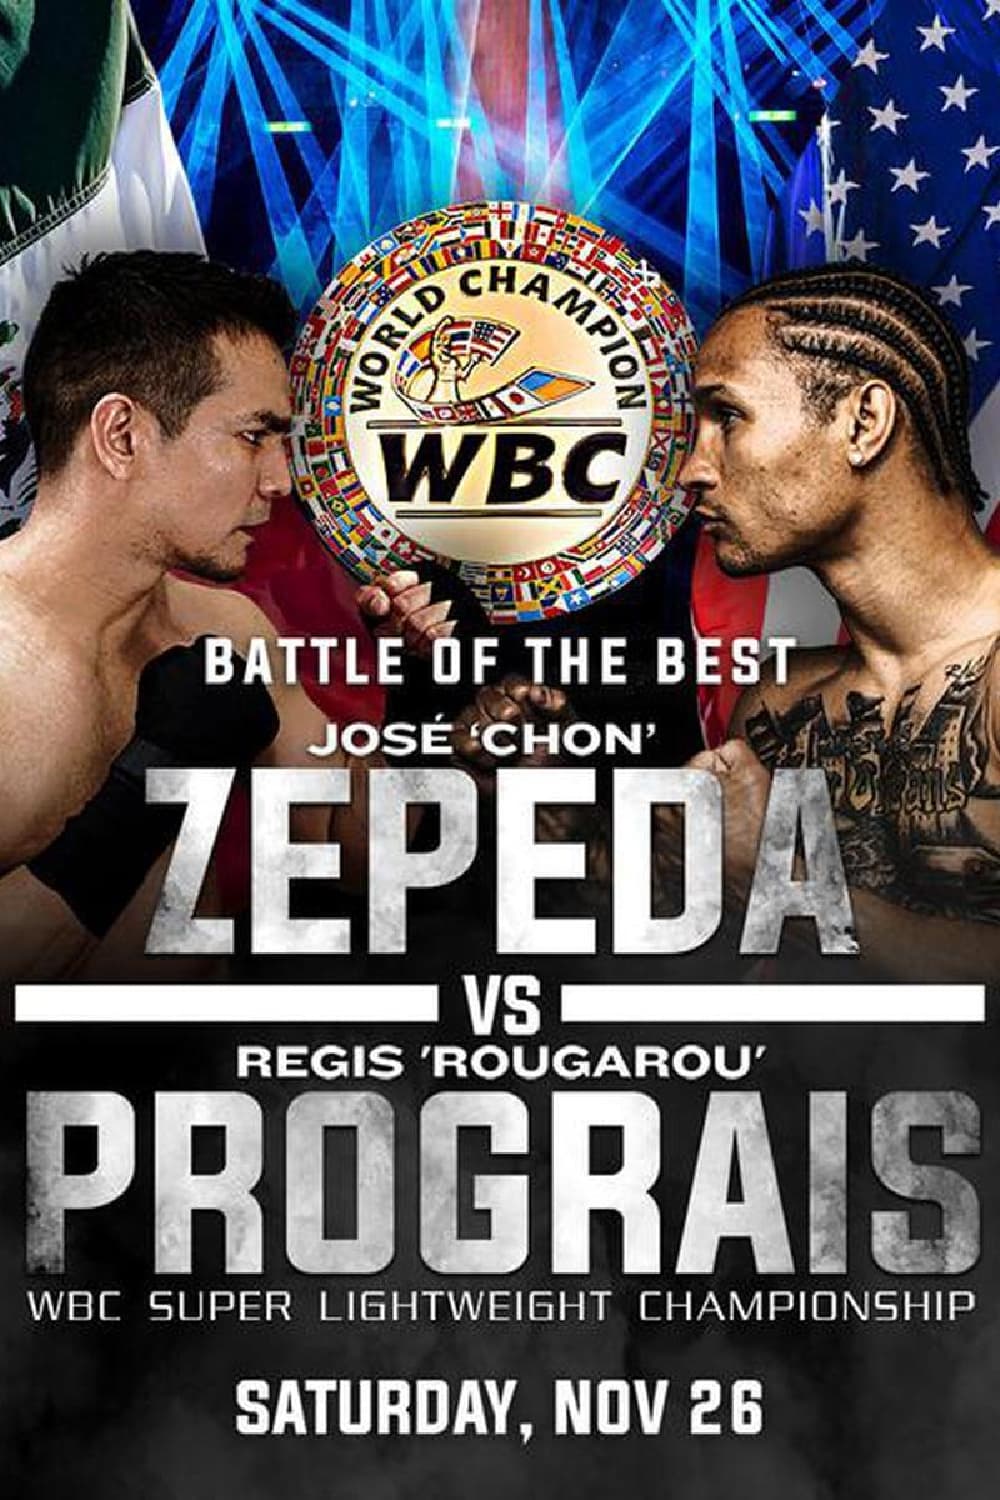 Jose Zepeda vs. Regis Prograis